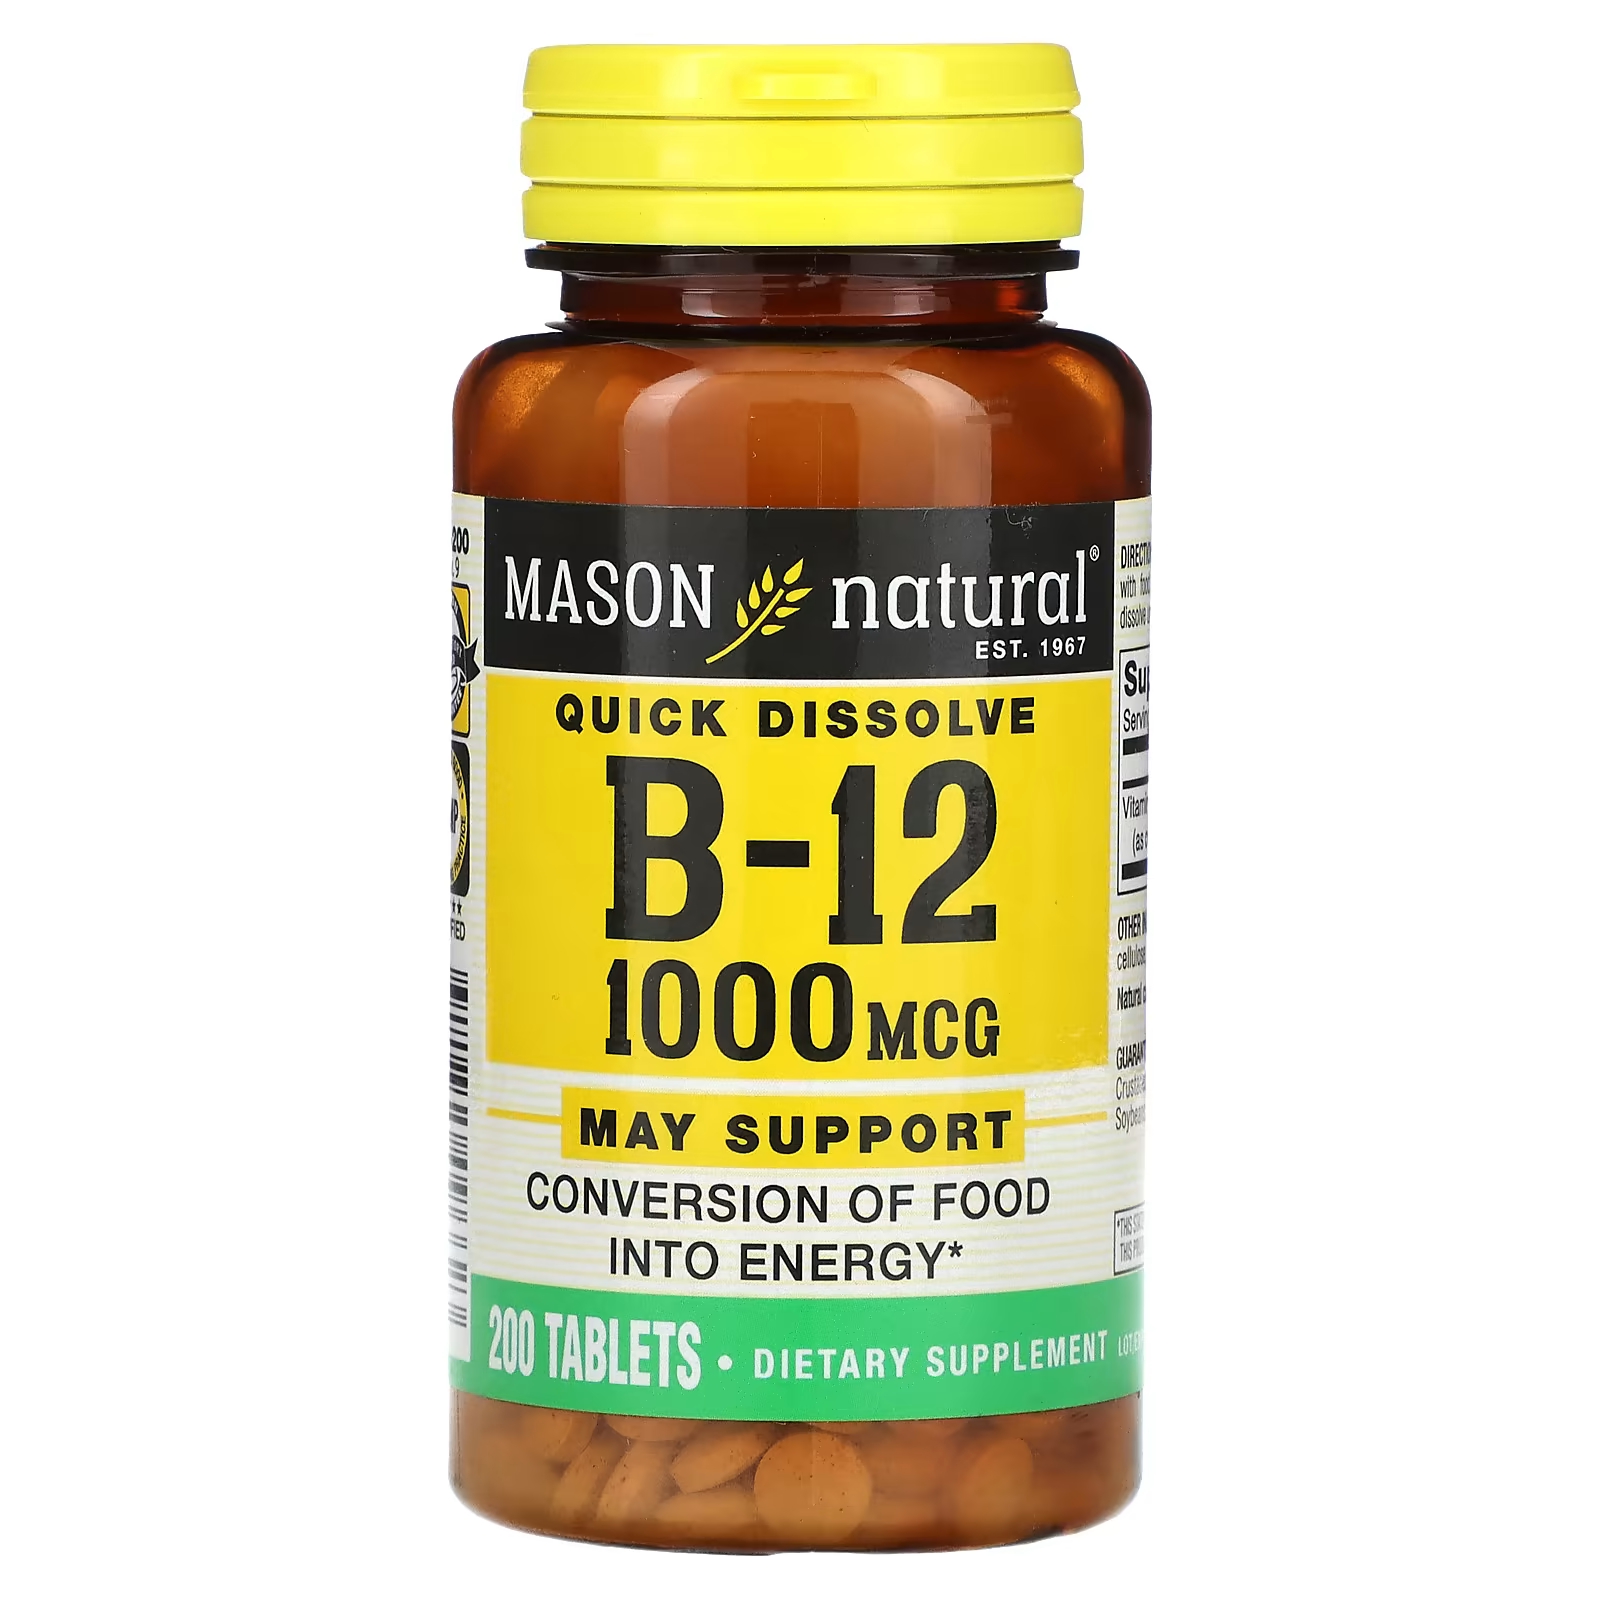 Биологически активная добавка Mason Natural витамин B-12, быстрорастворимый, 1000 мкг., 200 таблеток быстрорастворимый витамин b 12 mason natural 200 таблеток